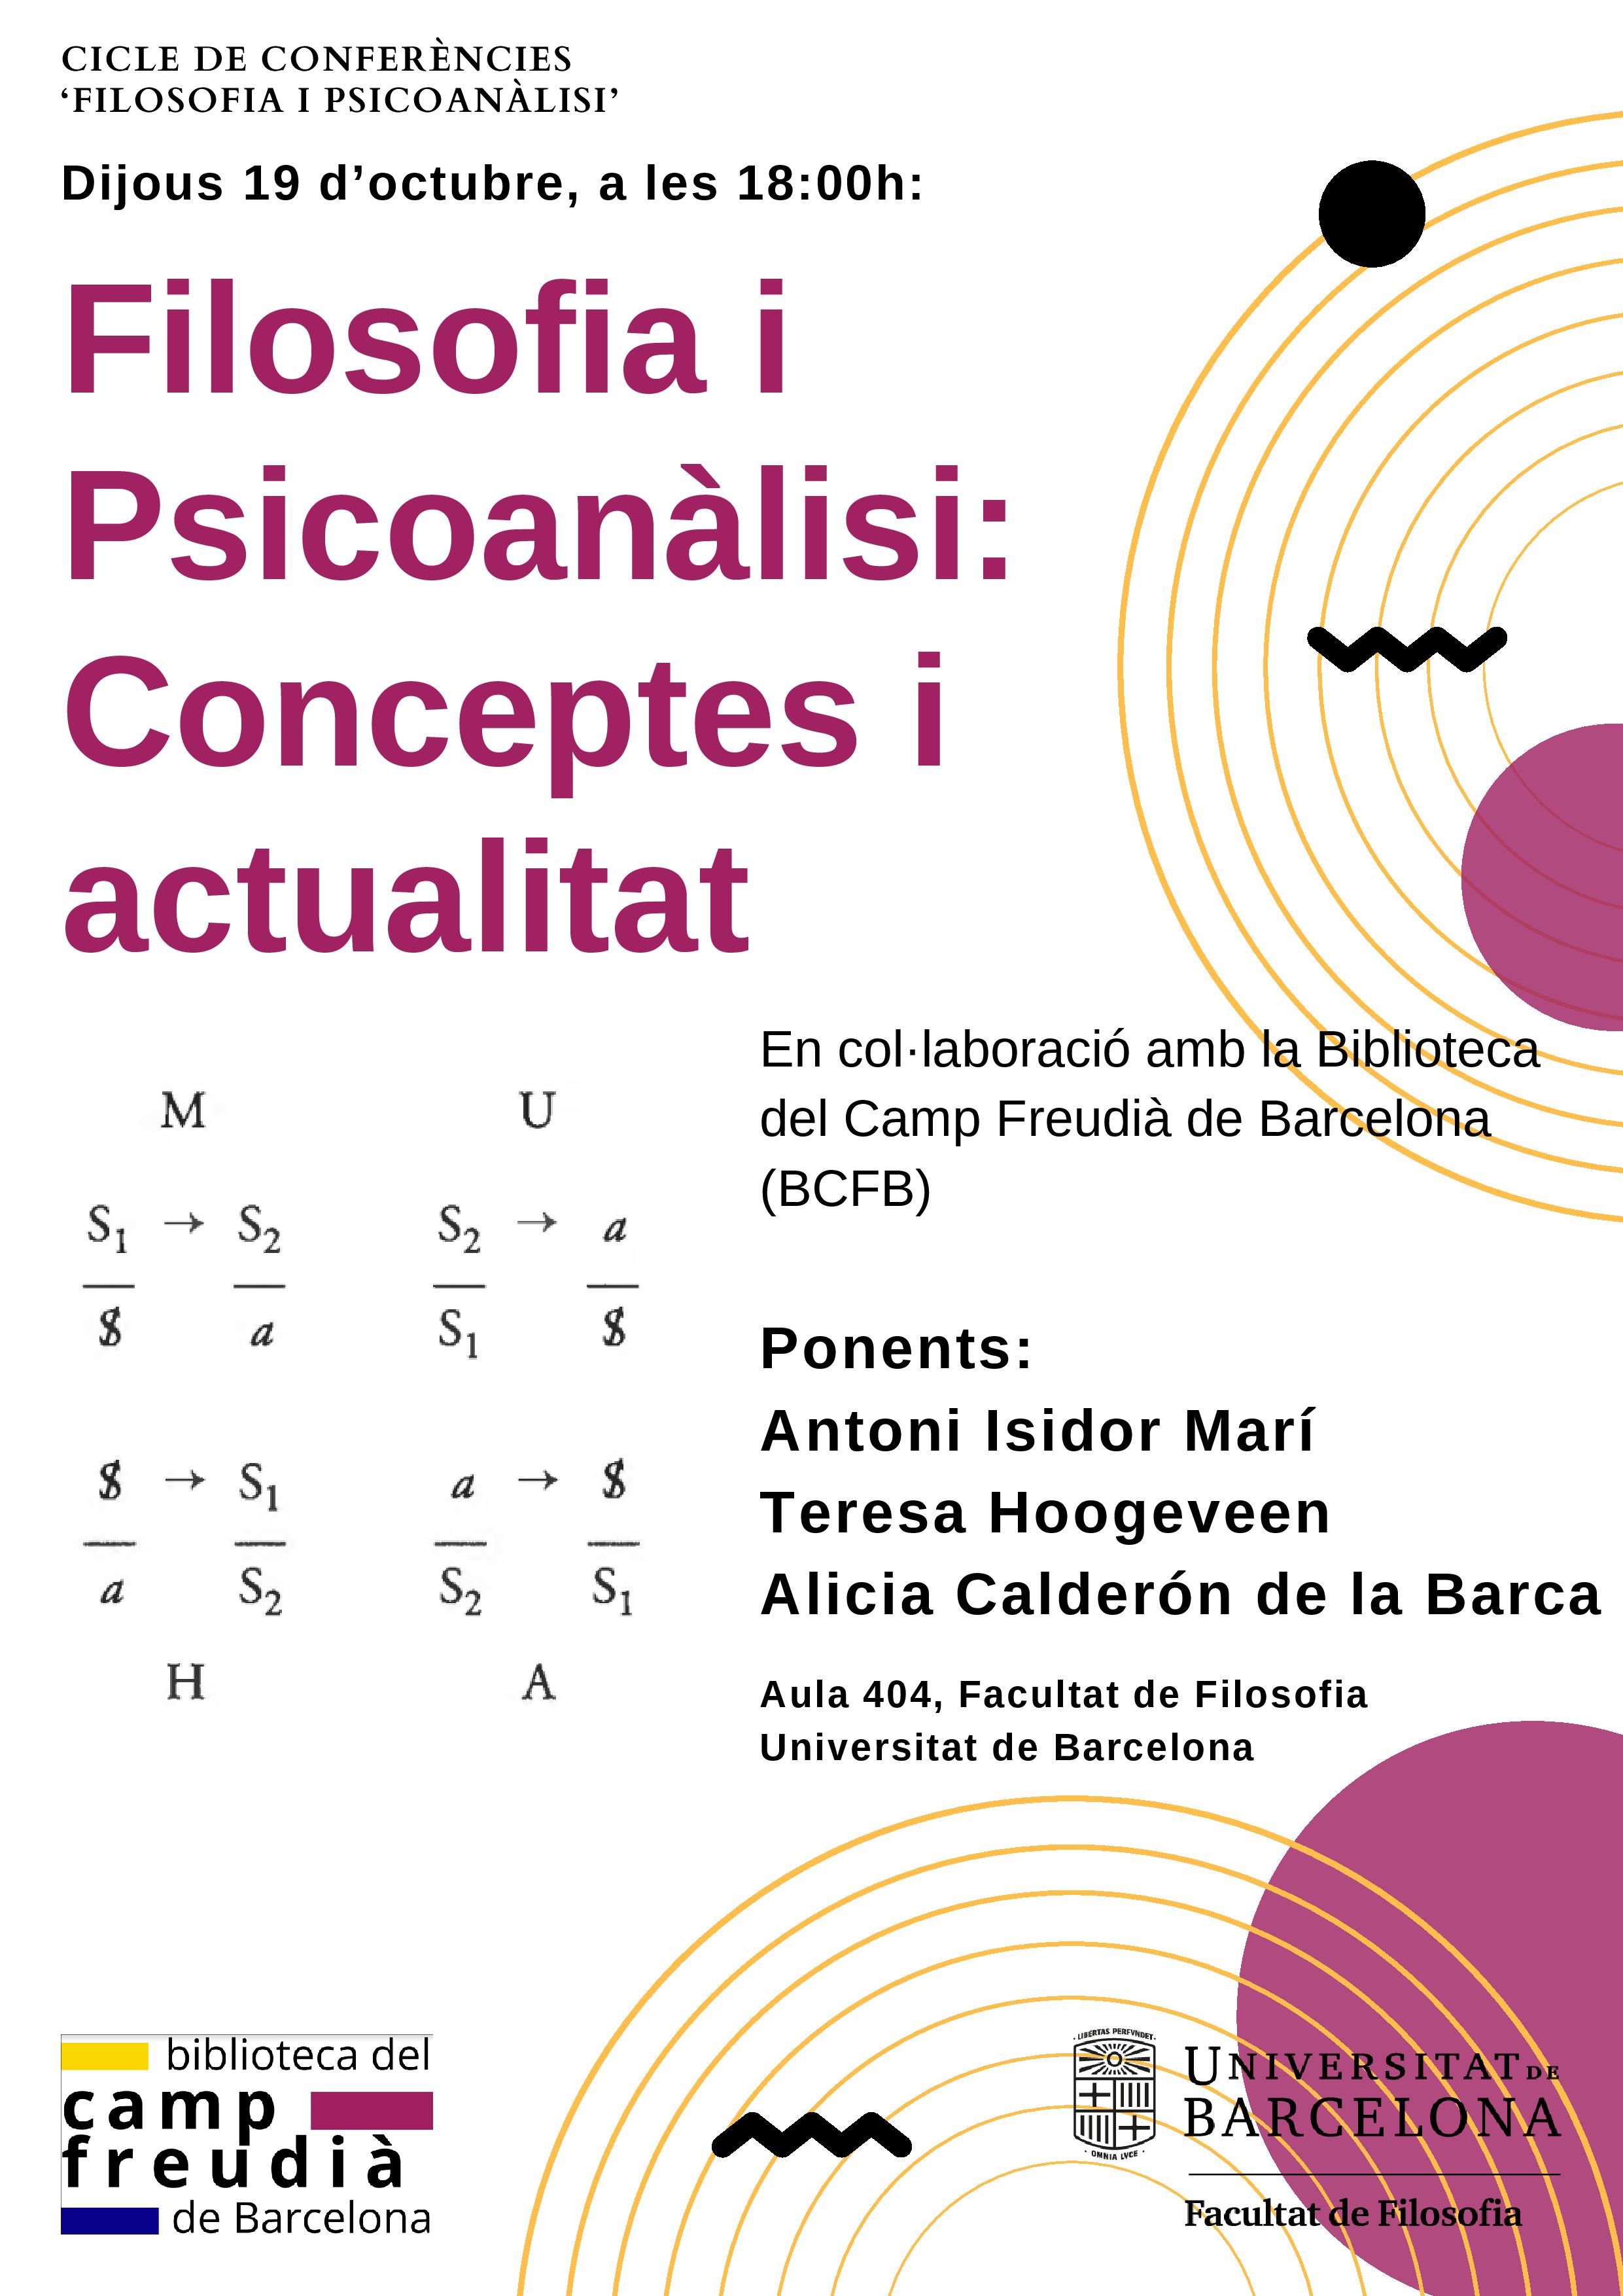 Ciclo de Conferencias Filosofía y Psicoanálisis 